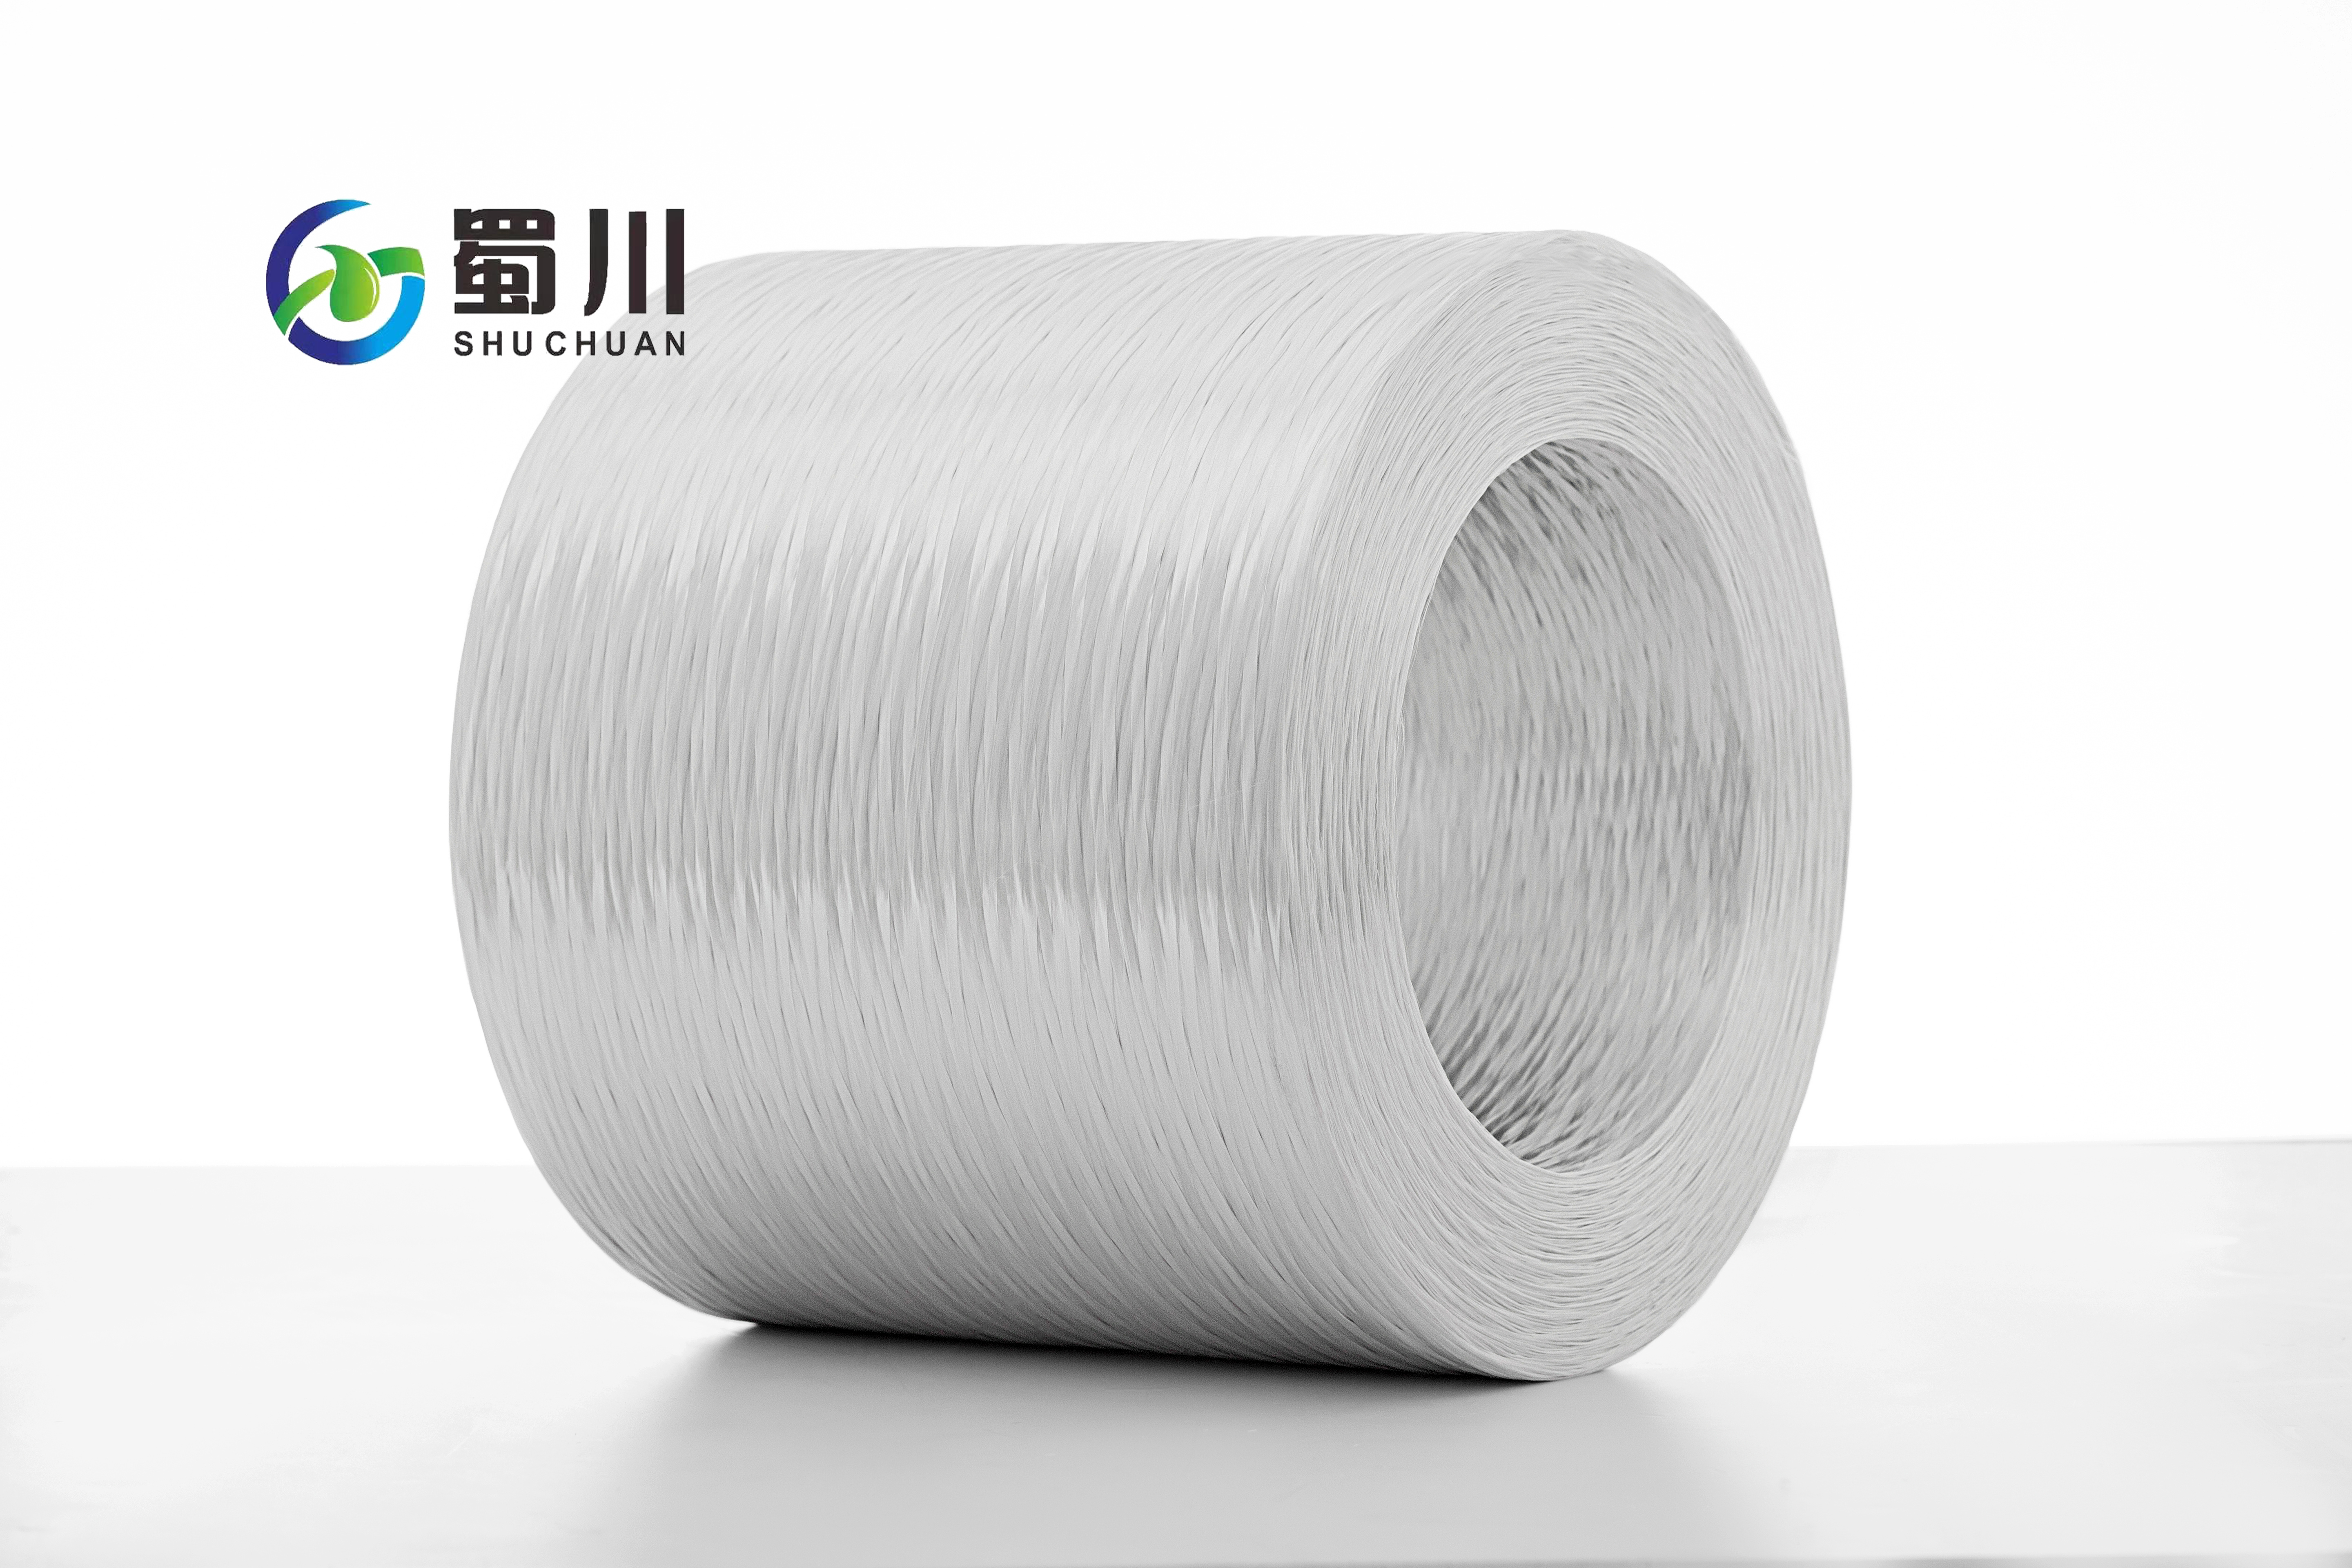 廣西蜀川公司隆重推出高性能玻璃纖維紗、方格布